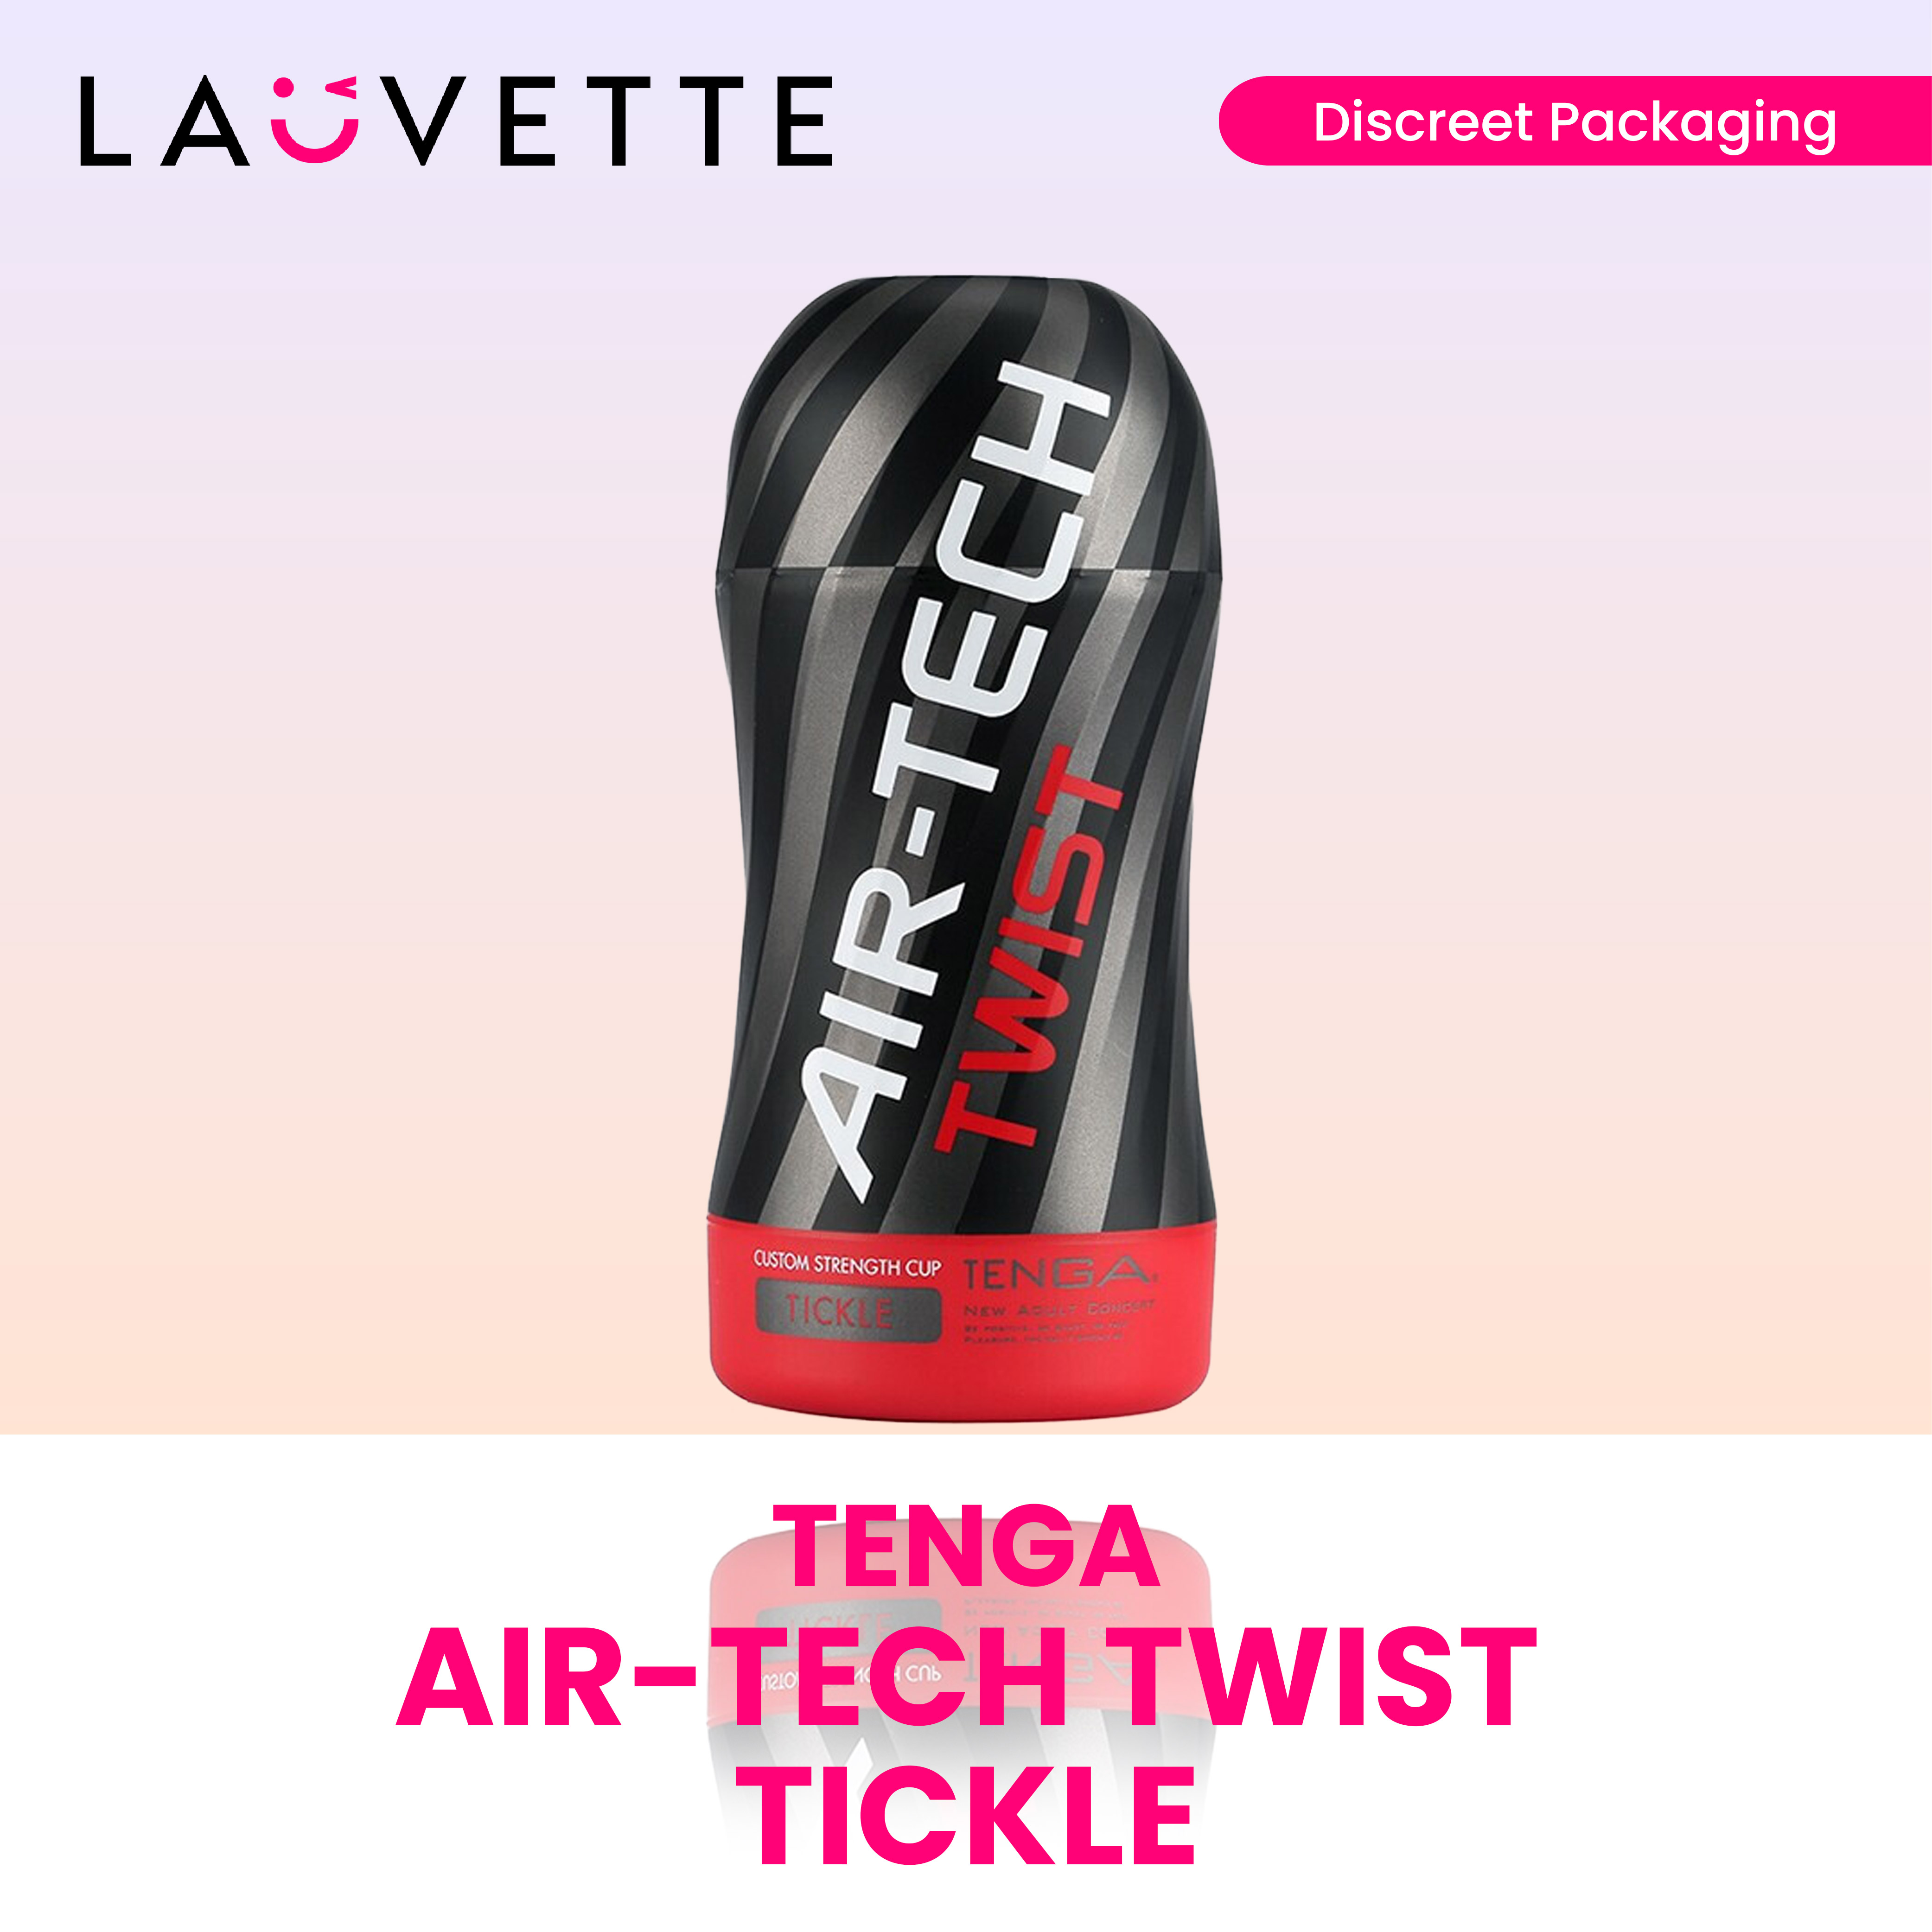 AIR-TECH TWIST Tickle